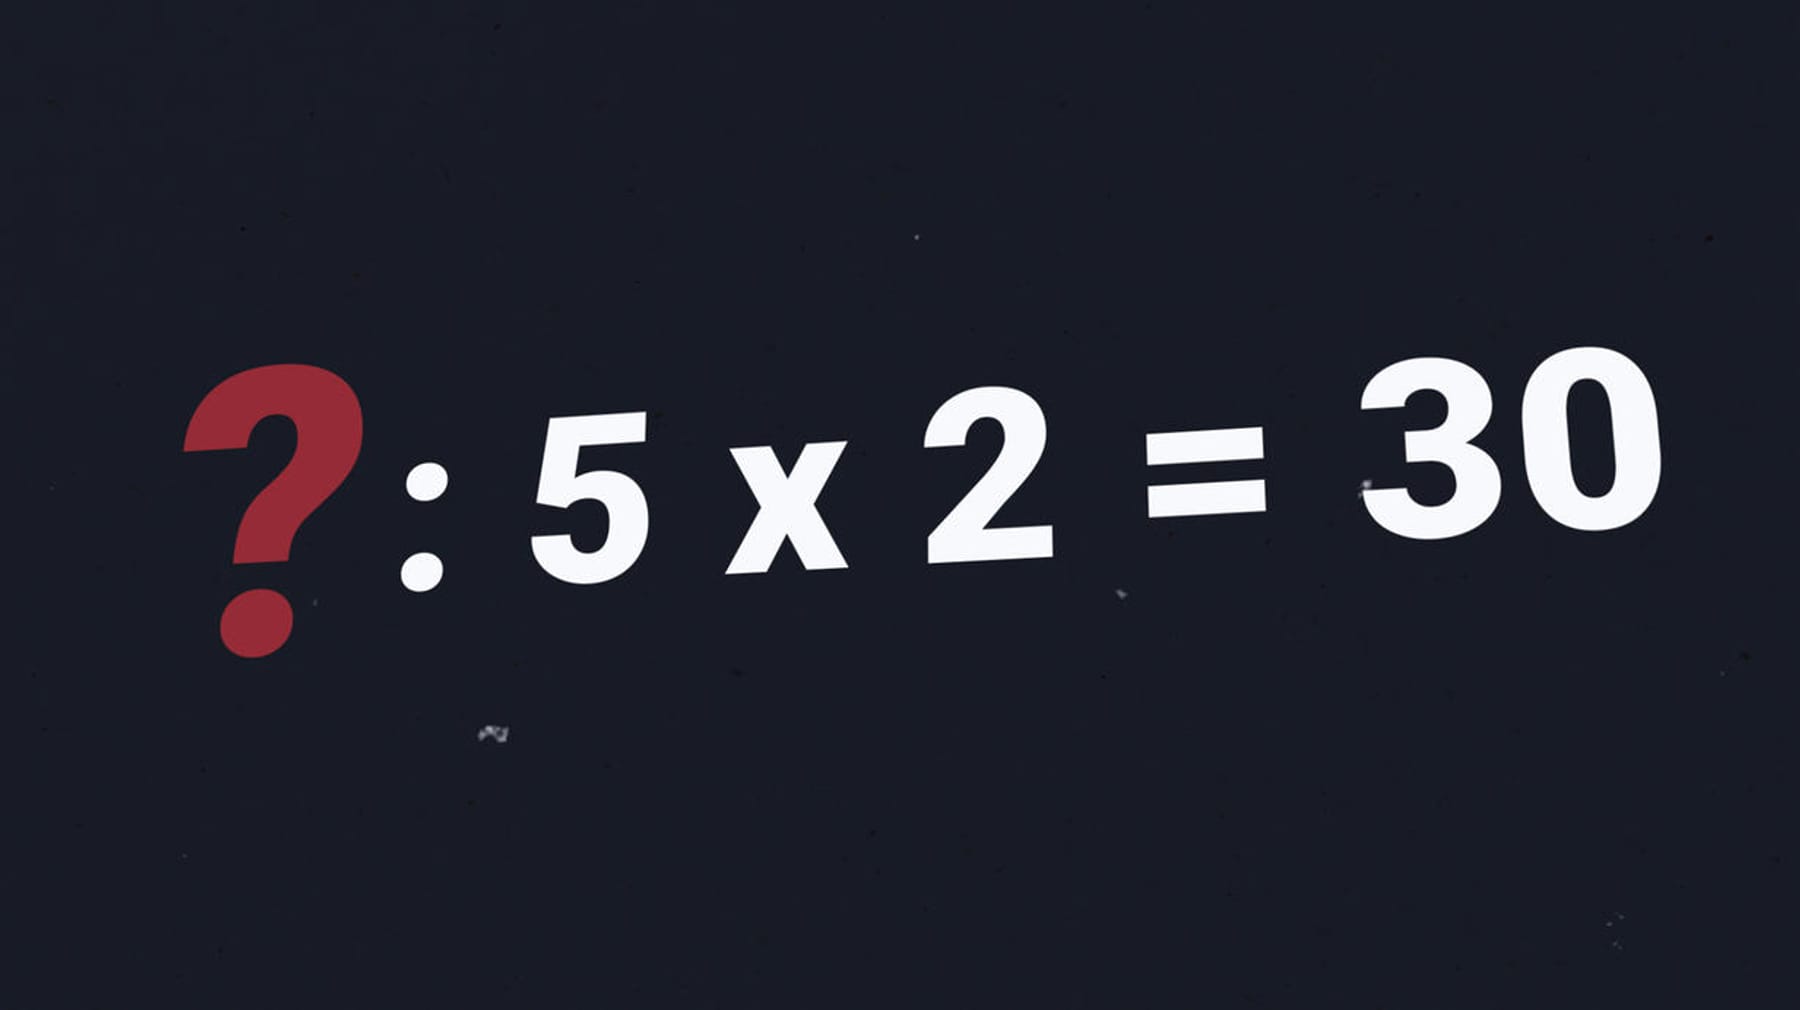 Adivinanza – ¿Qué número se necesita en este problema de matemáticas?